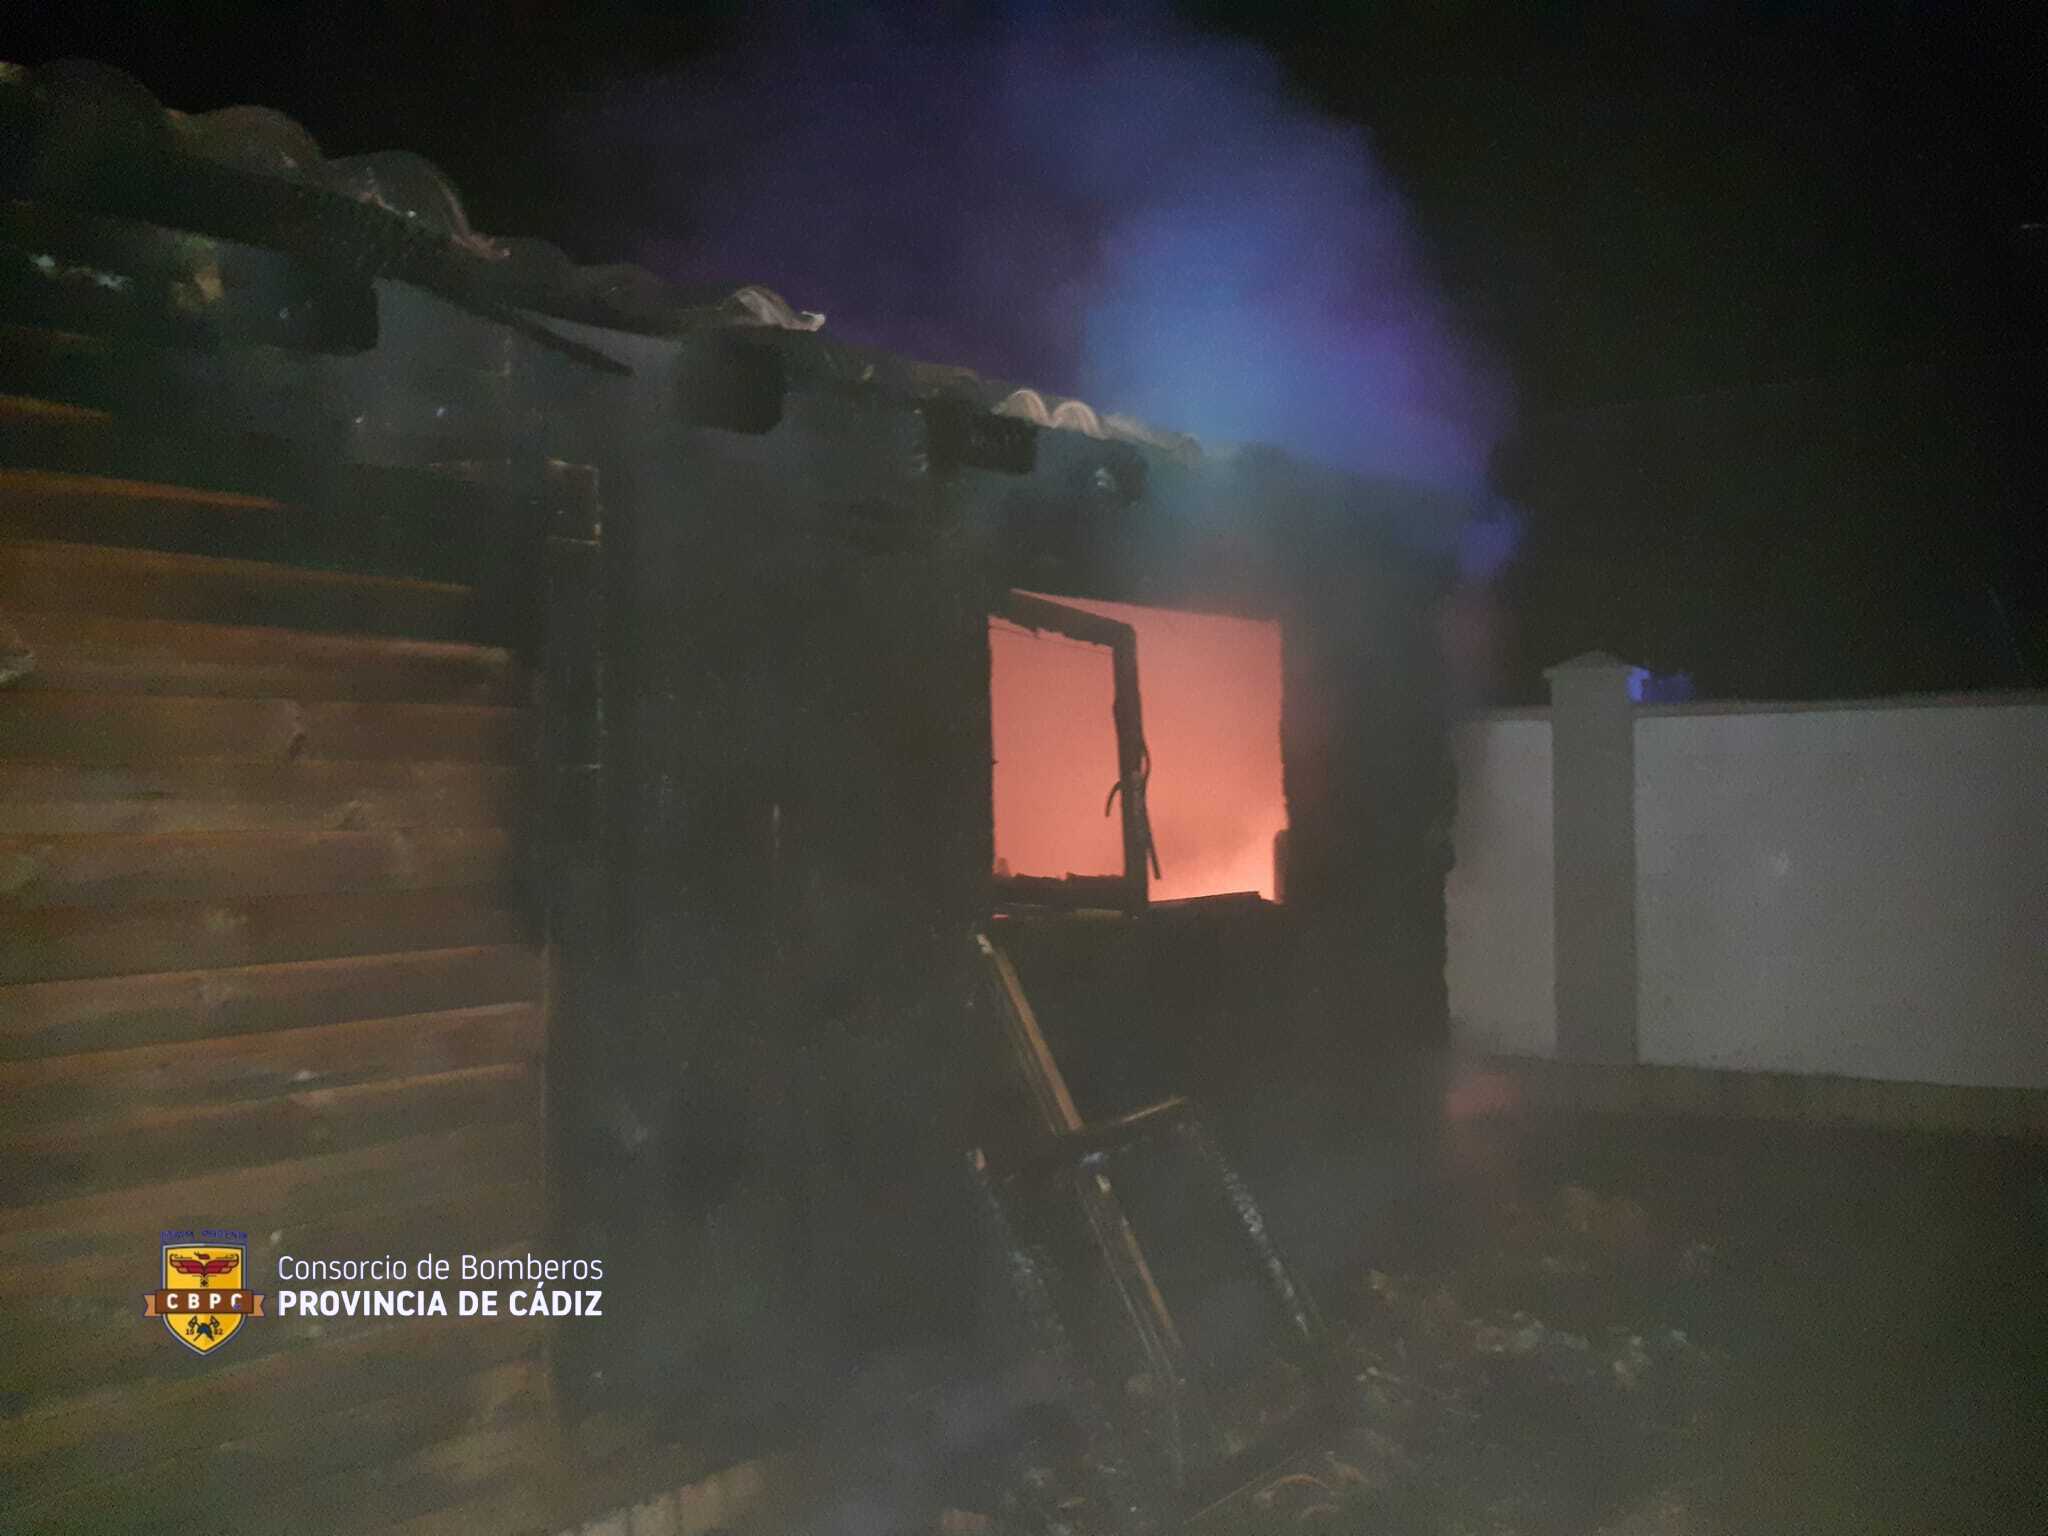 Imagen del incendio en una casa de la barriada de Cuartillos publicada por los bomberos de la provincia de Cádiz en redes sociales.